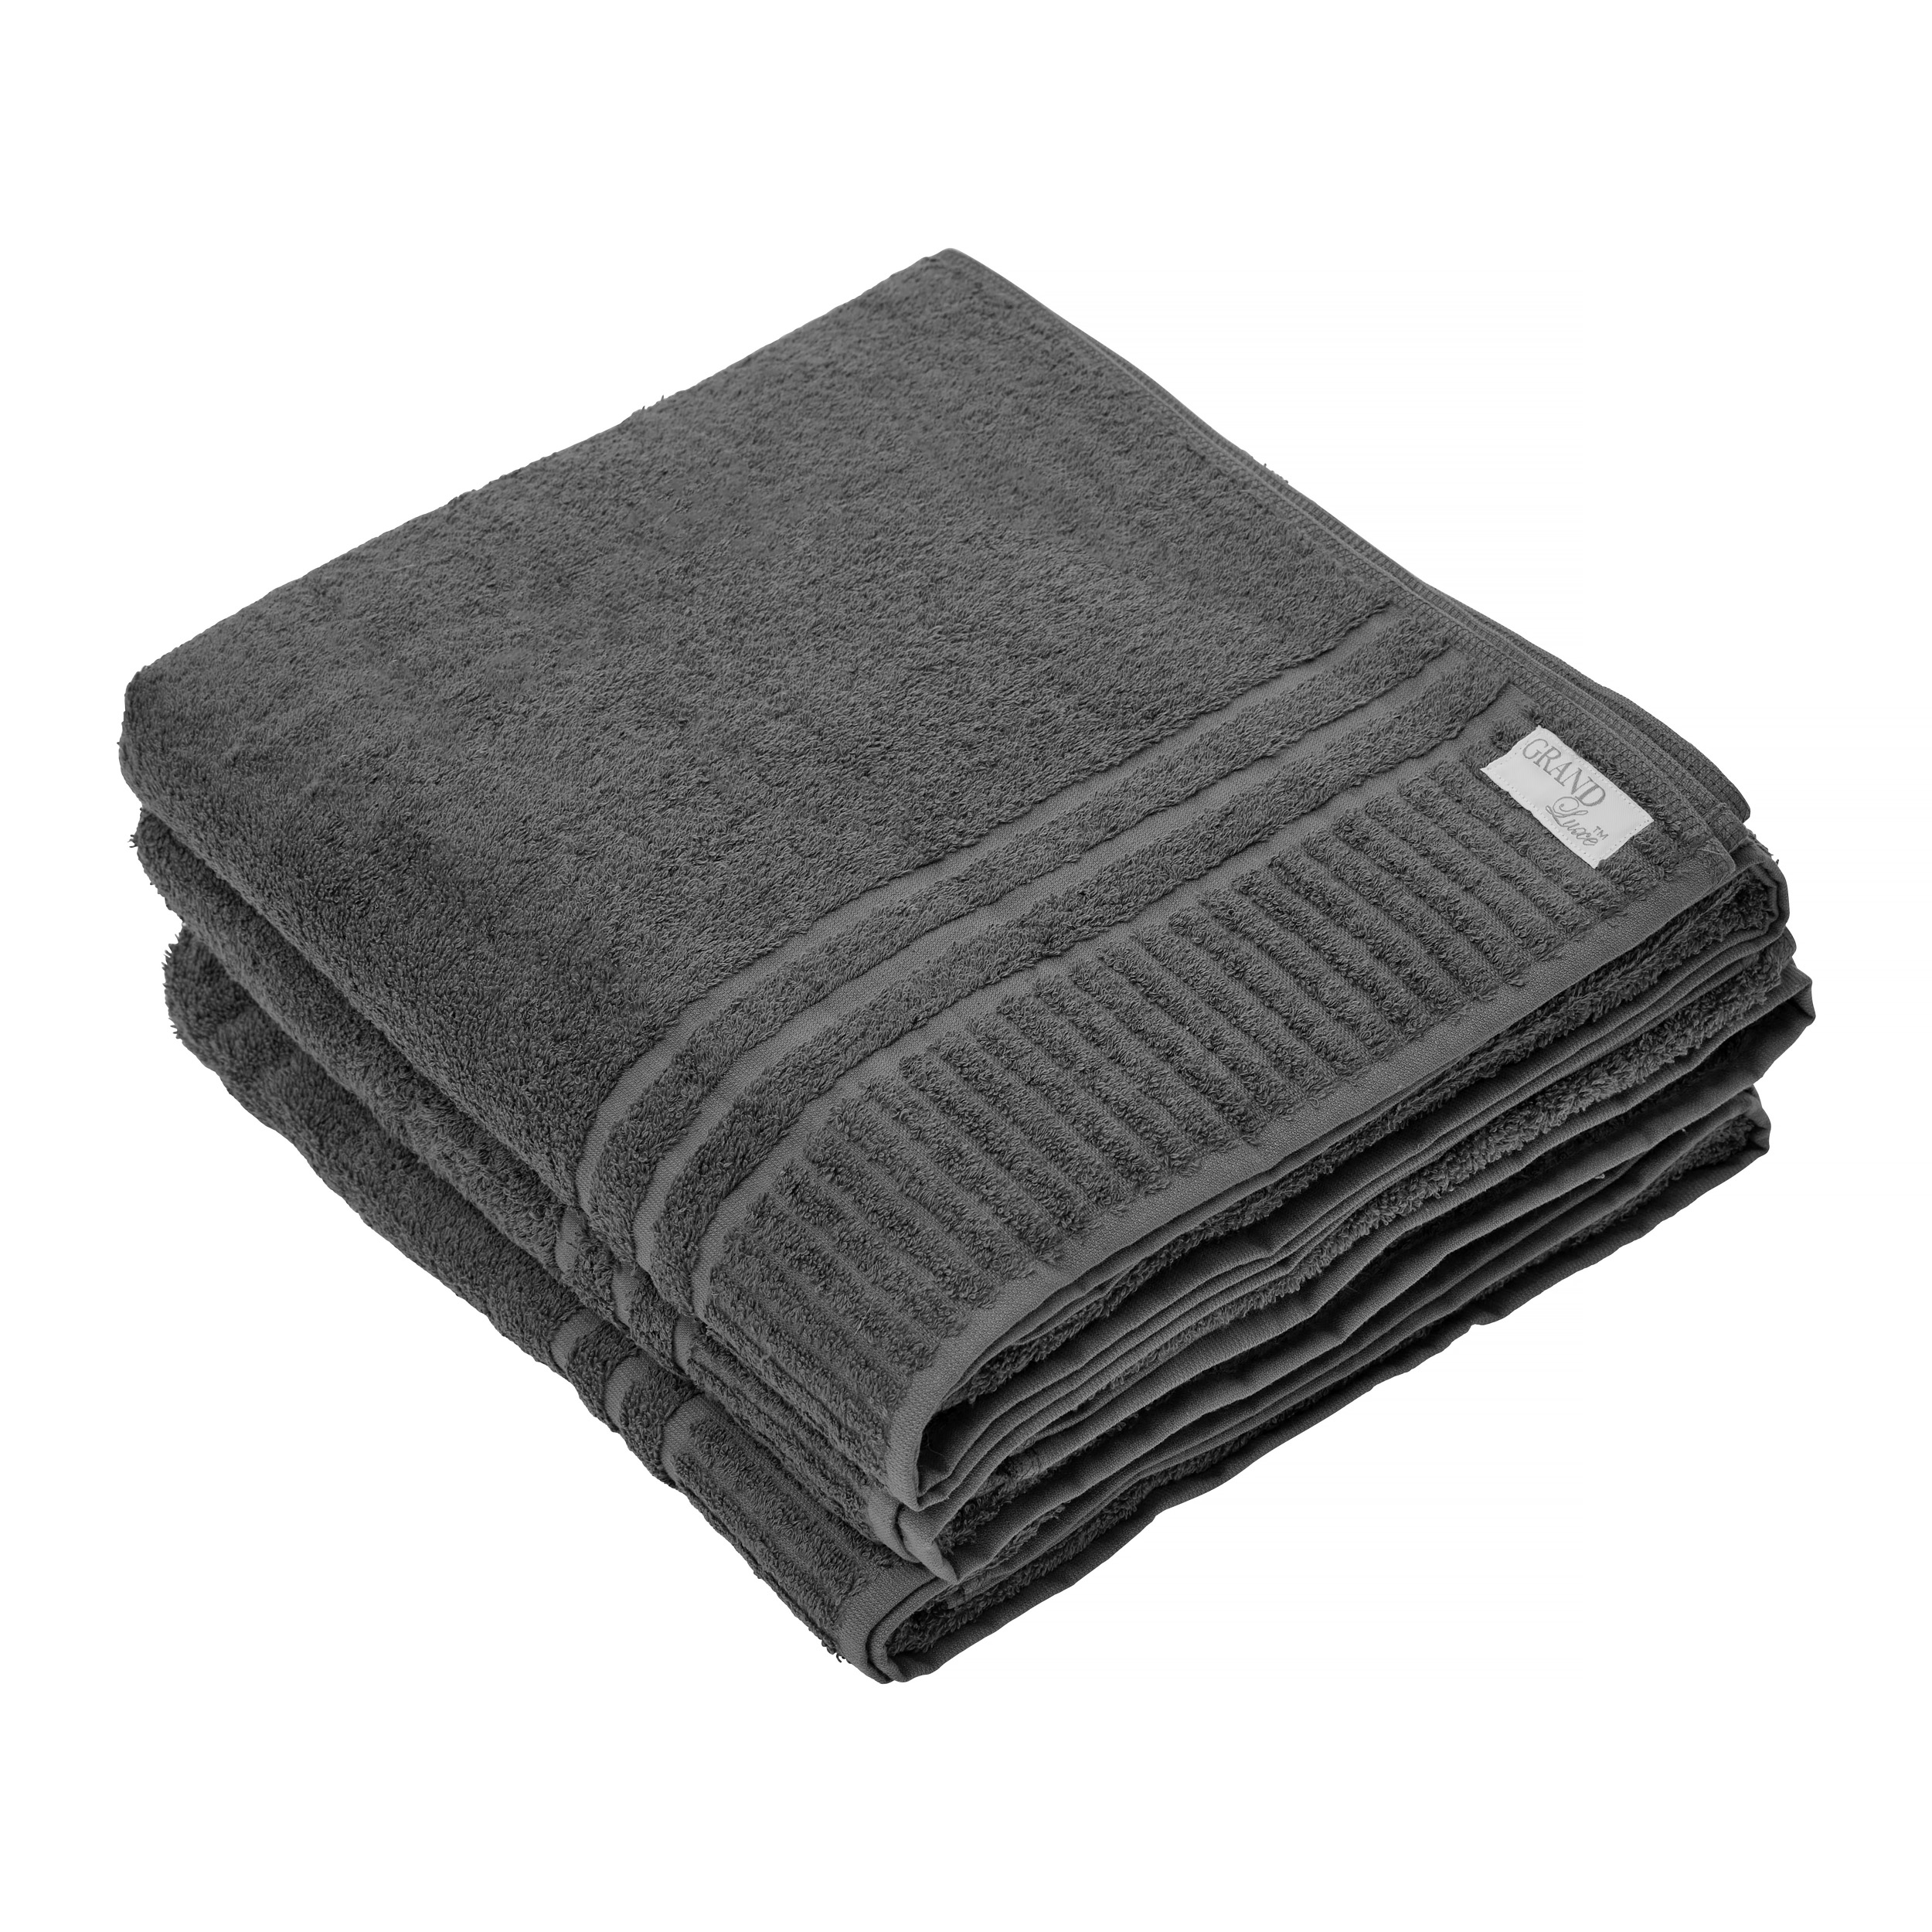 Towel Grand Luxe Kashmir Gray 100x150 cm 500 g